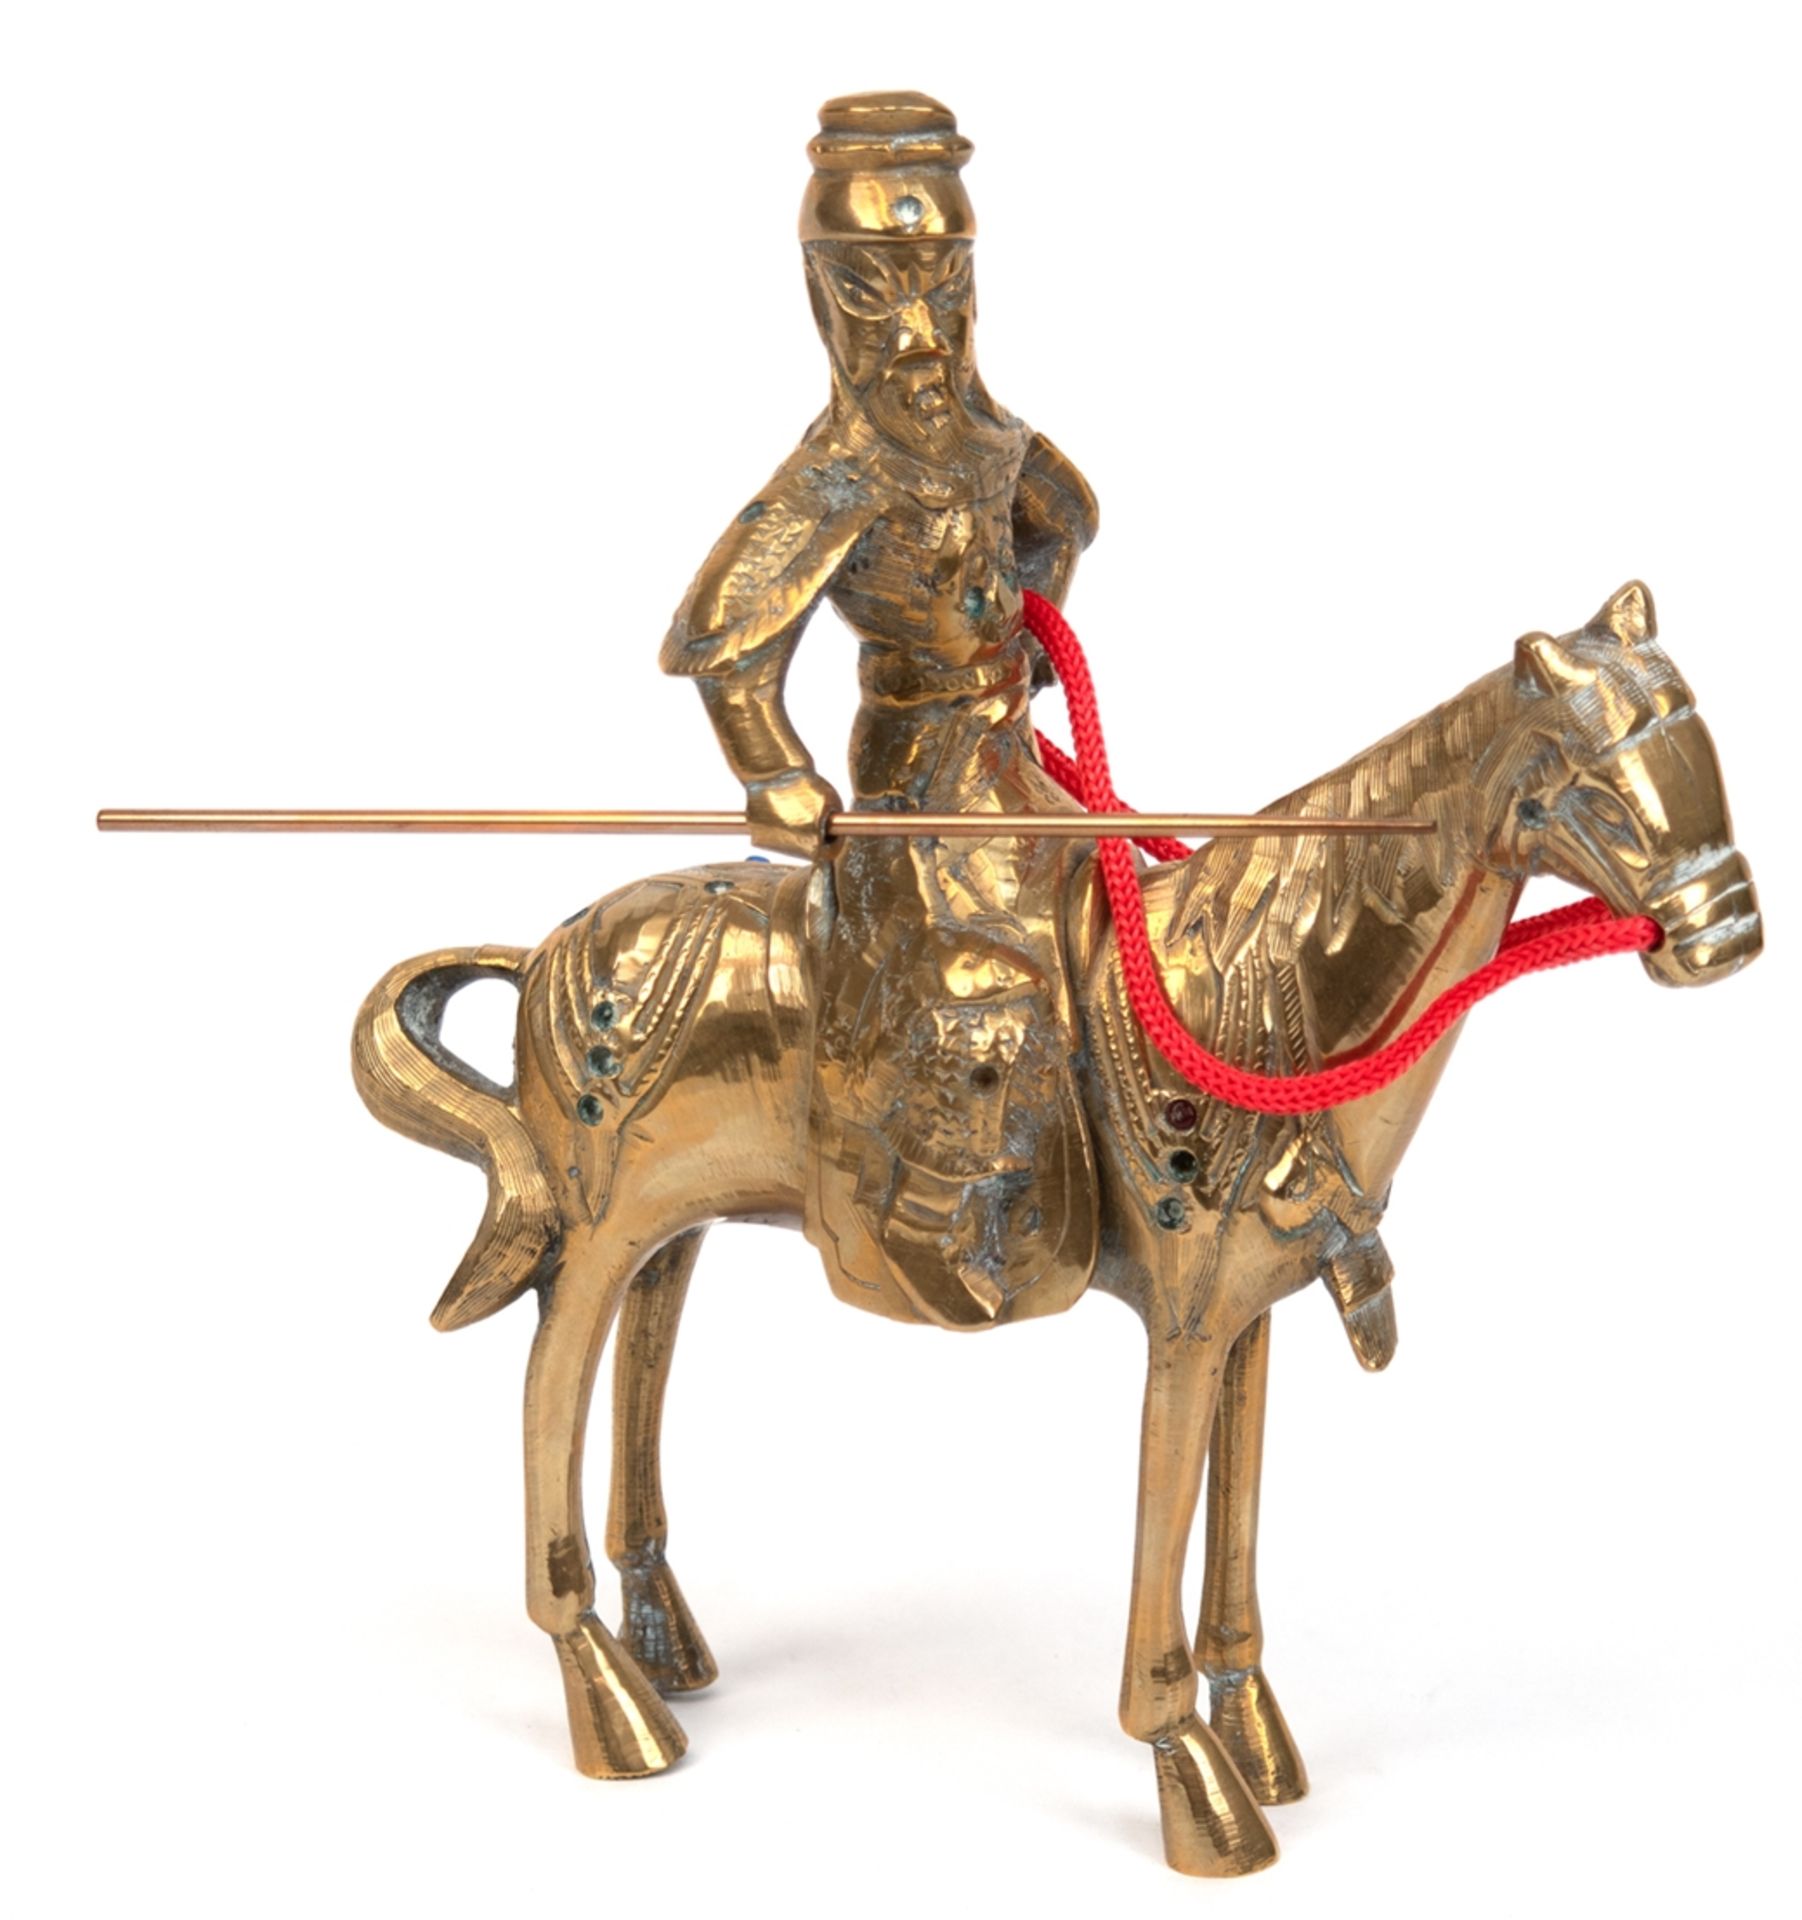 Messing-Figur "Samurai-Krieger in Rüstung auf Pferd sitzend", 20. Jh., H. 22 cm